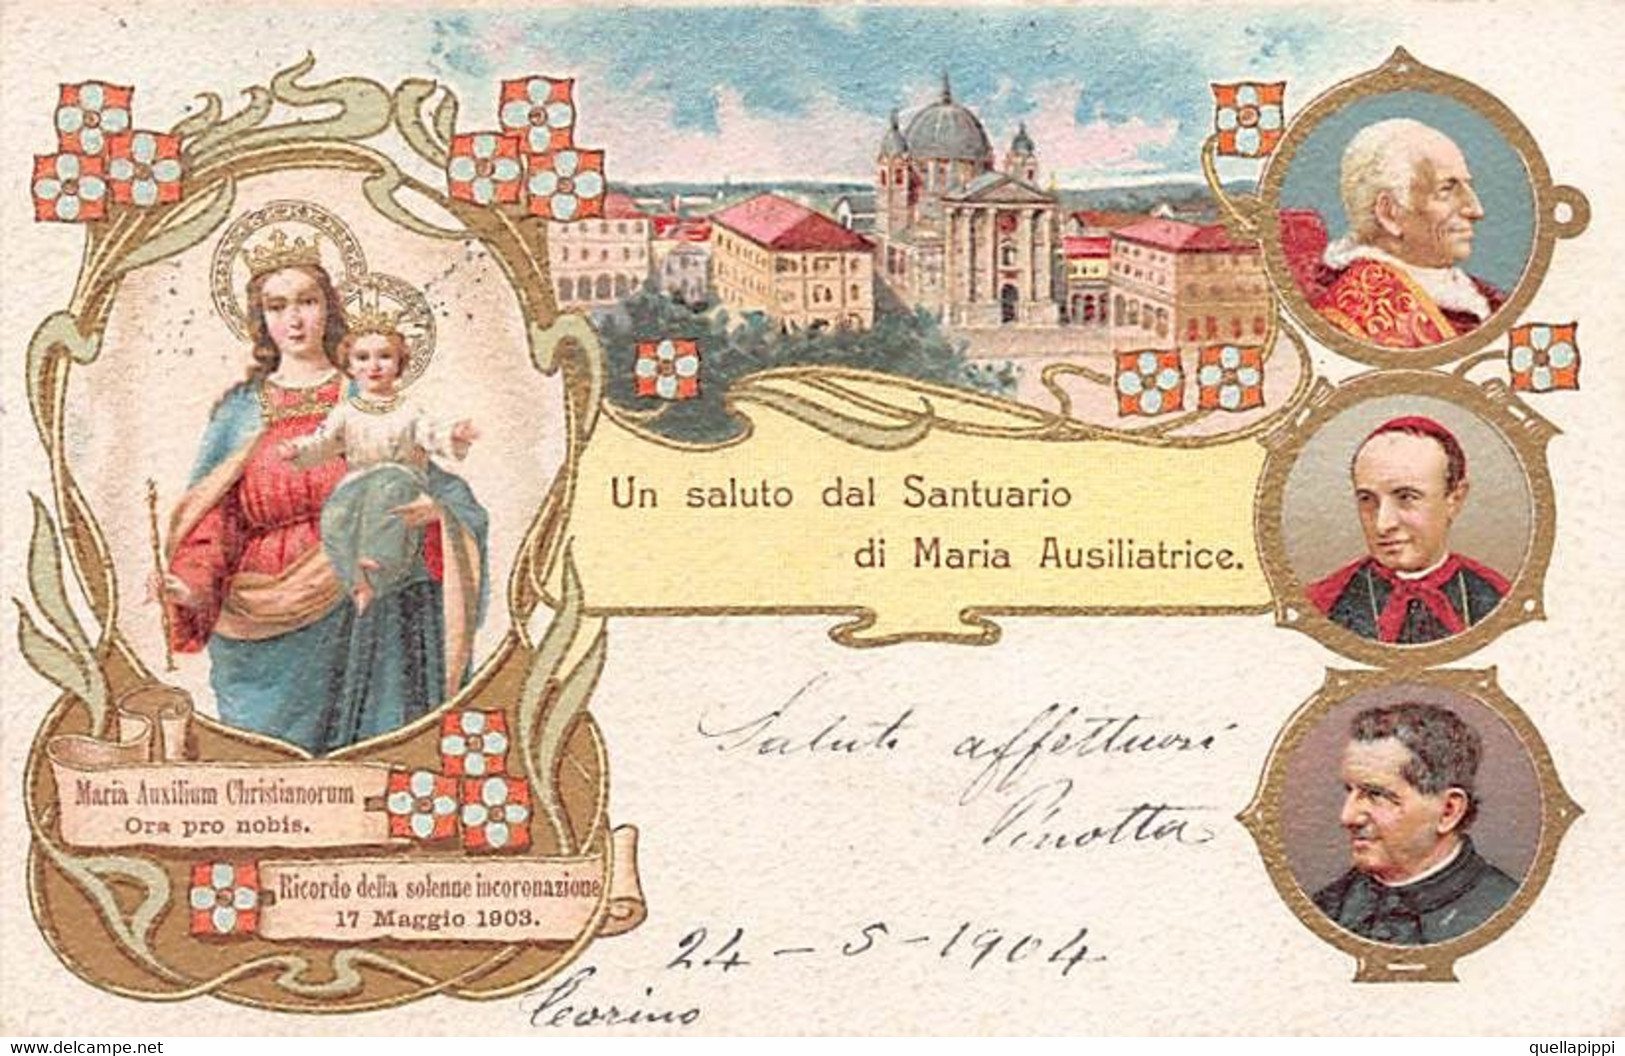 014157 "TORINO - UN SALUTO DAL SANTUARIO DI MARIA AUSILIATRICE" IMMAGINE RELIGIOSA, CART SPED 1904 - Églises